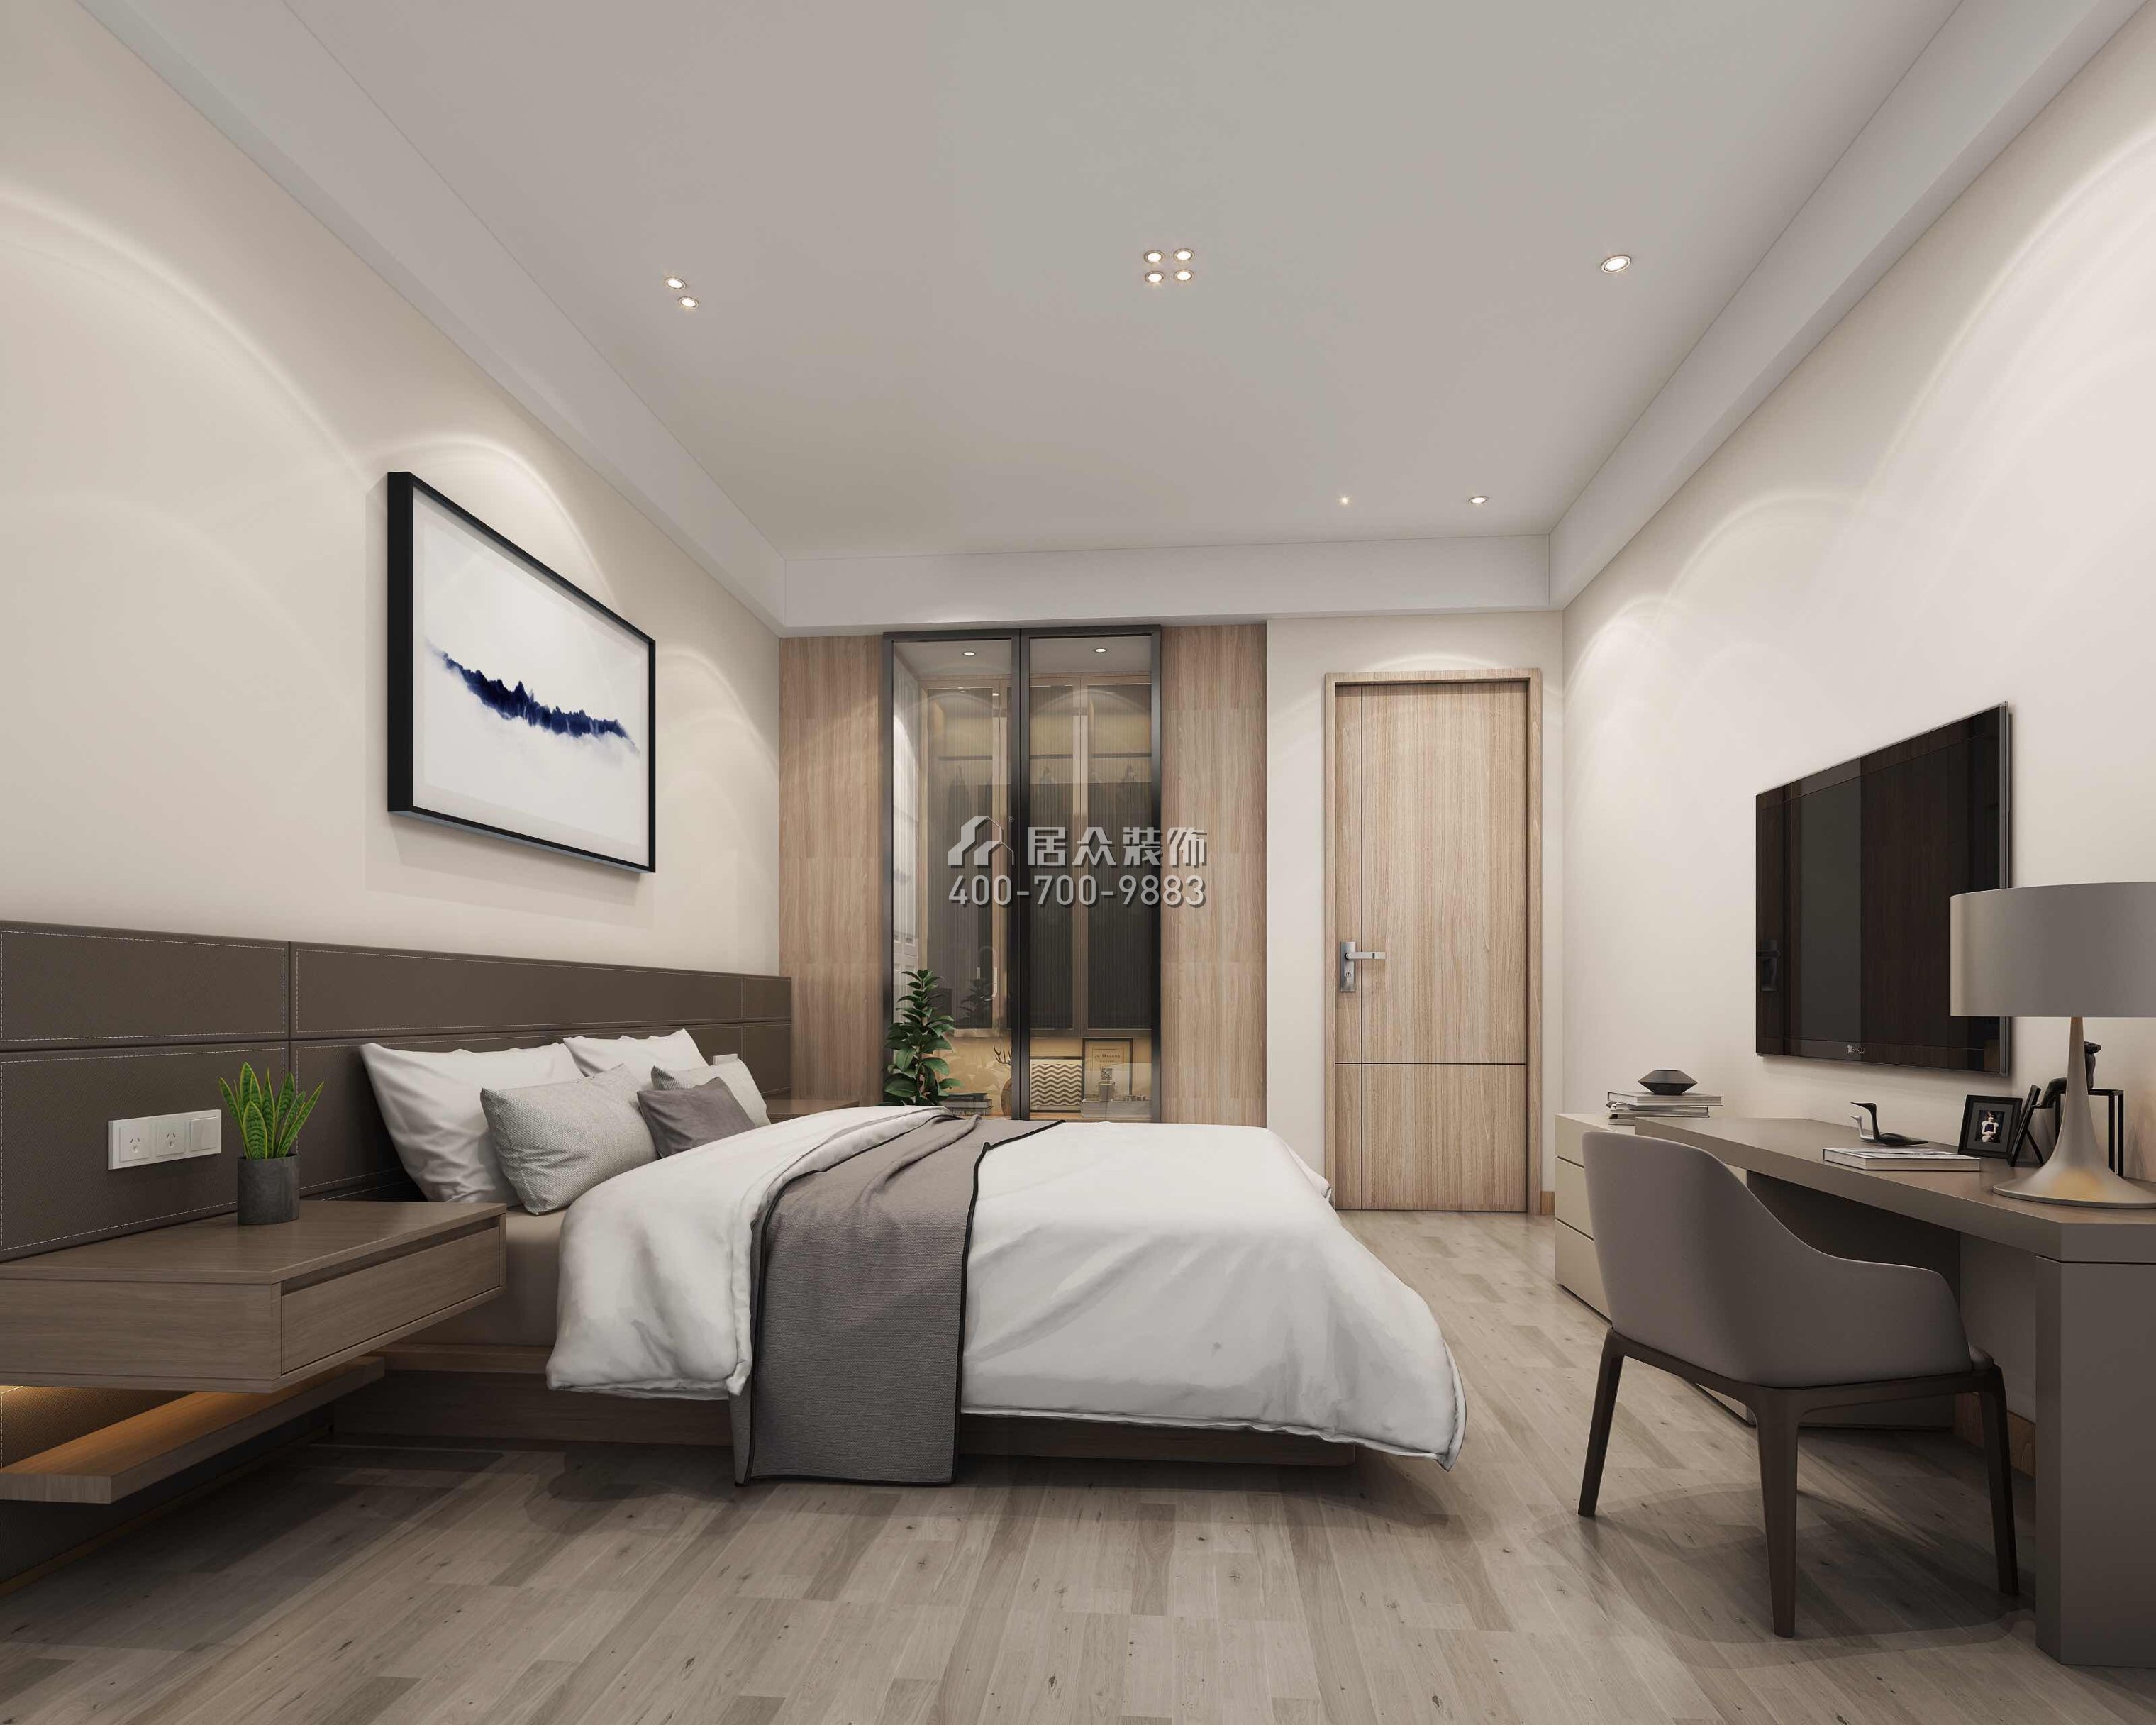 豐泰觀山420平方米現代簡約風格別墅戶型臥室裝修效果圖